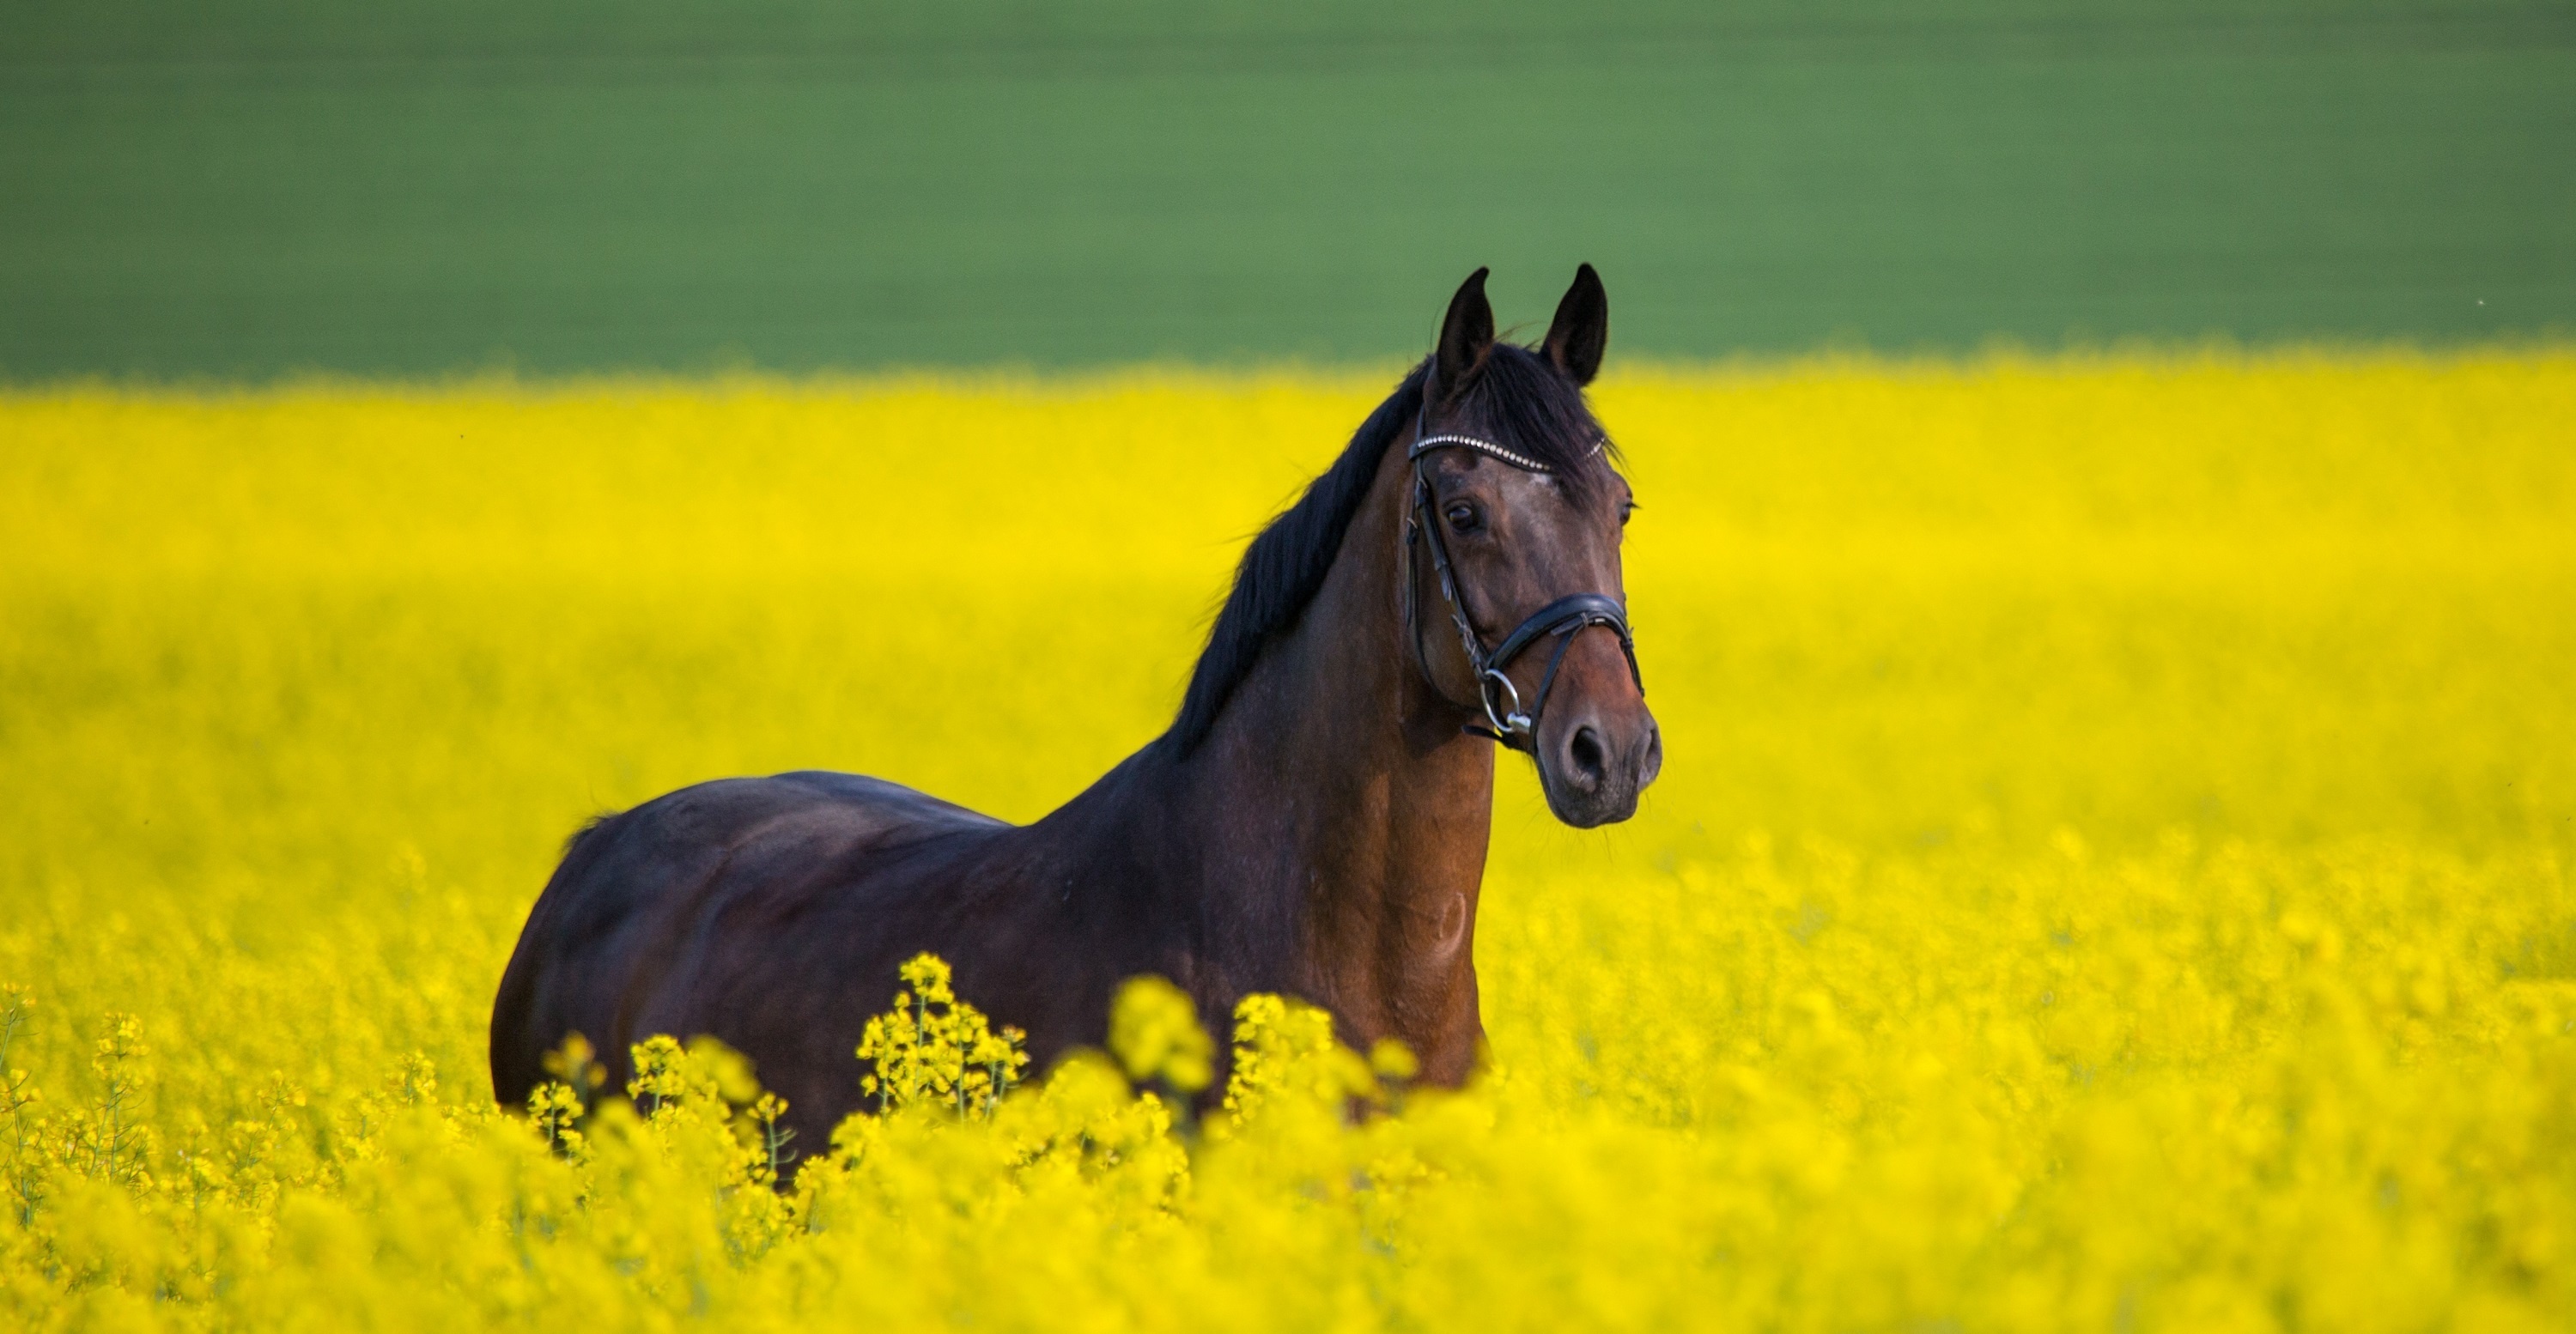 Желтая лошадка